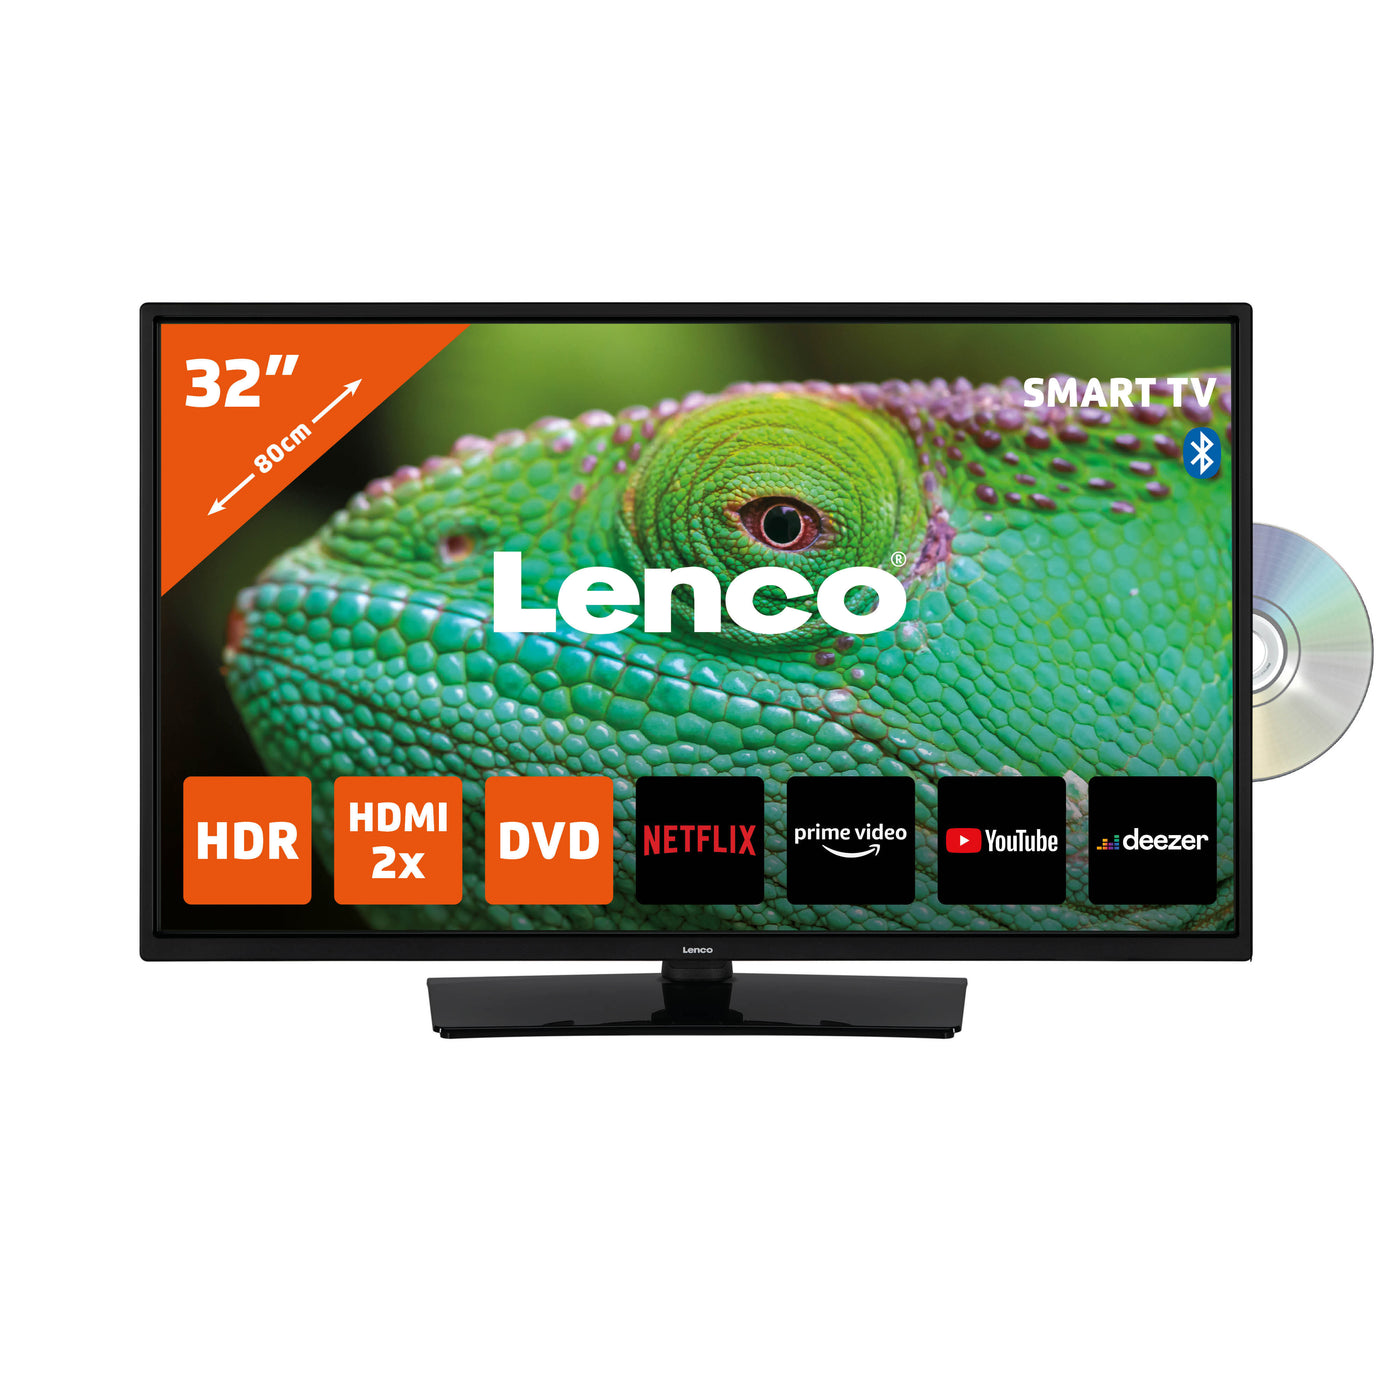 LENCO DVL-3273BK - 32" Smart TV with built-in DVD player, black